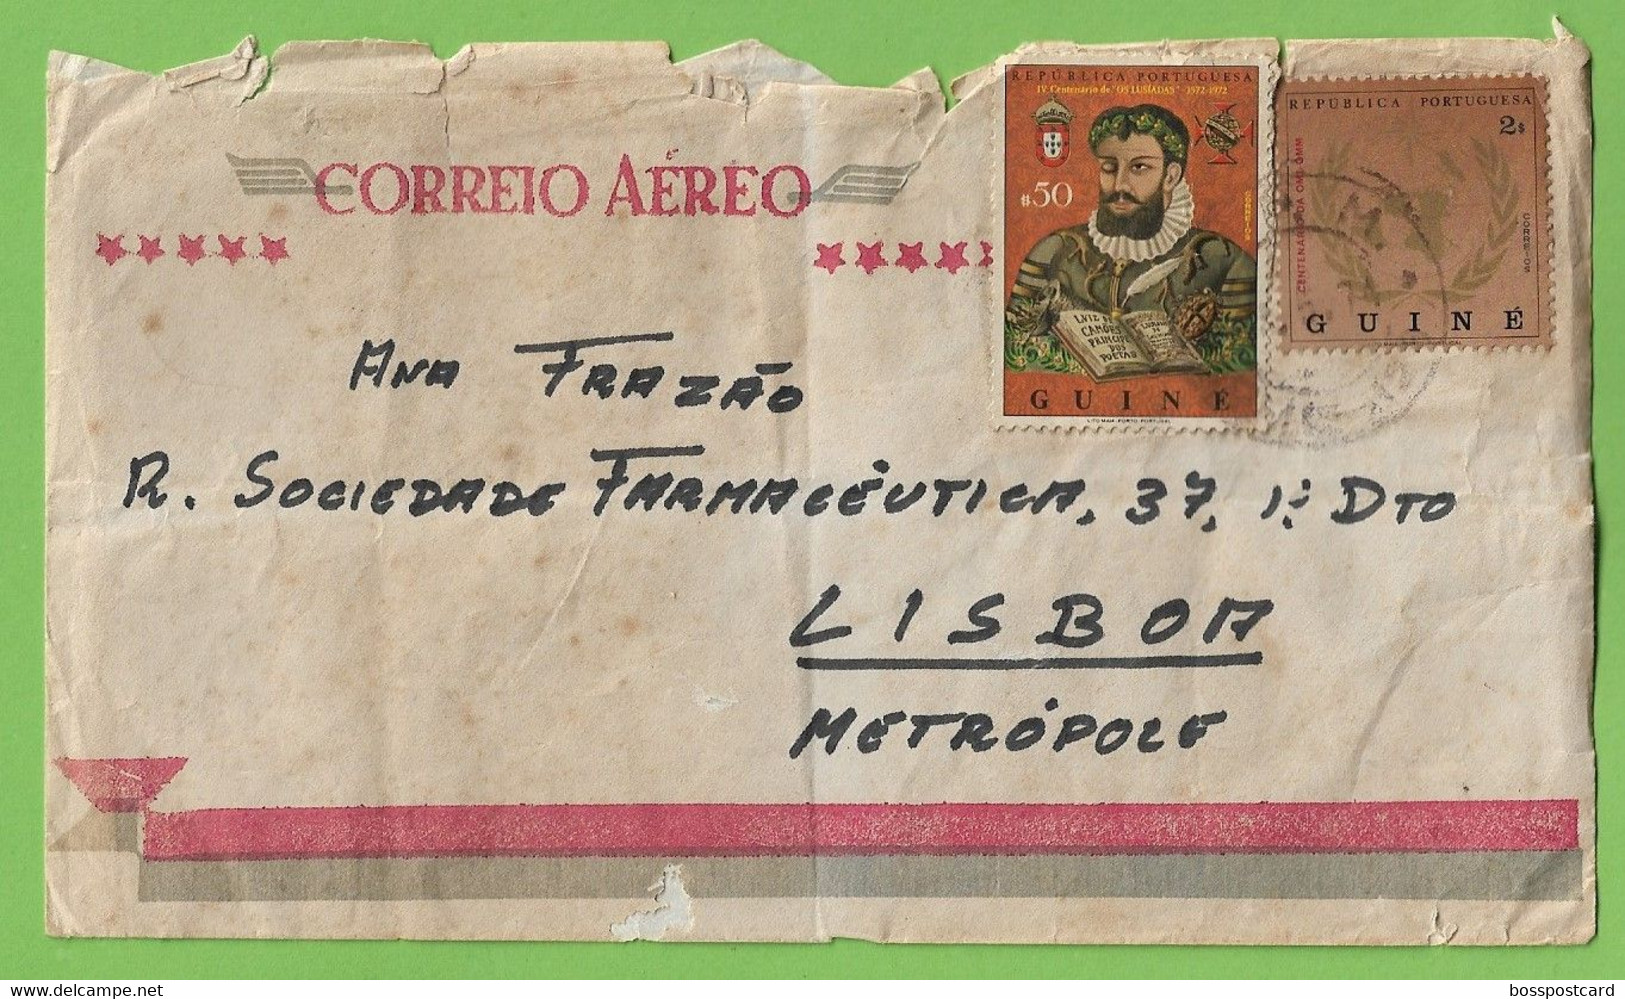 História Postal - Filatelia - Correio Aéreo - Airmail - Stamps - Timbres - Philately - Portugal - Guiné (danificado) - Gebruikt